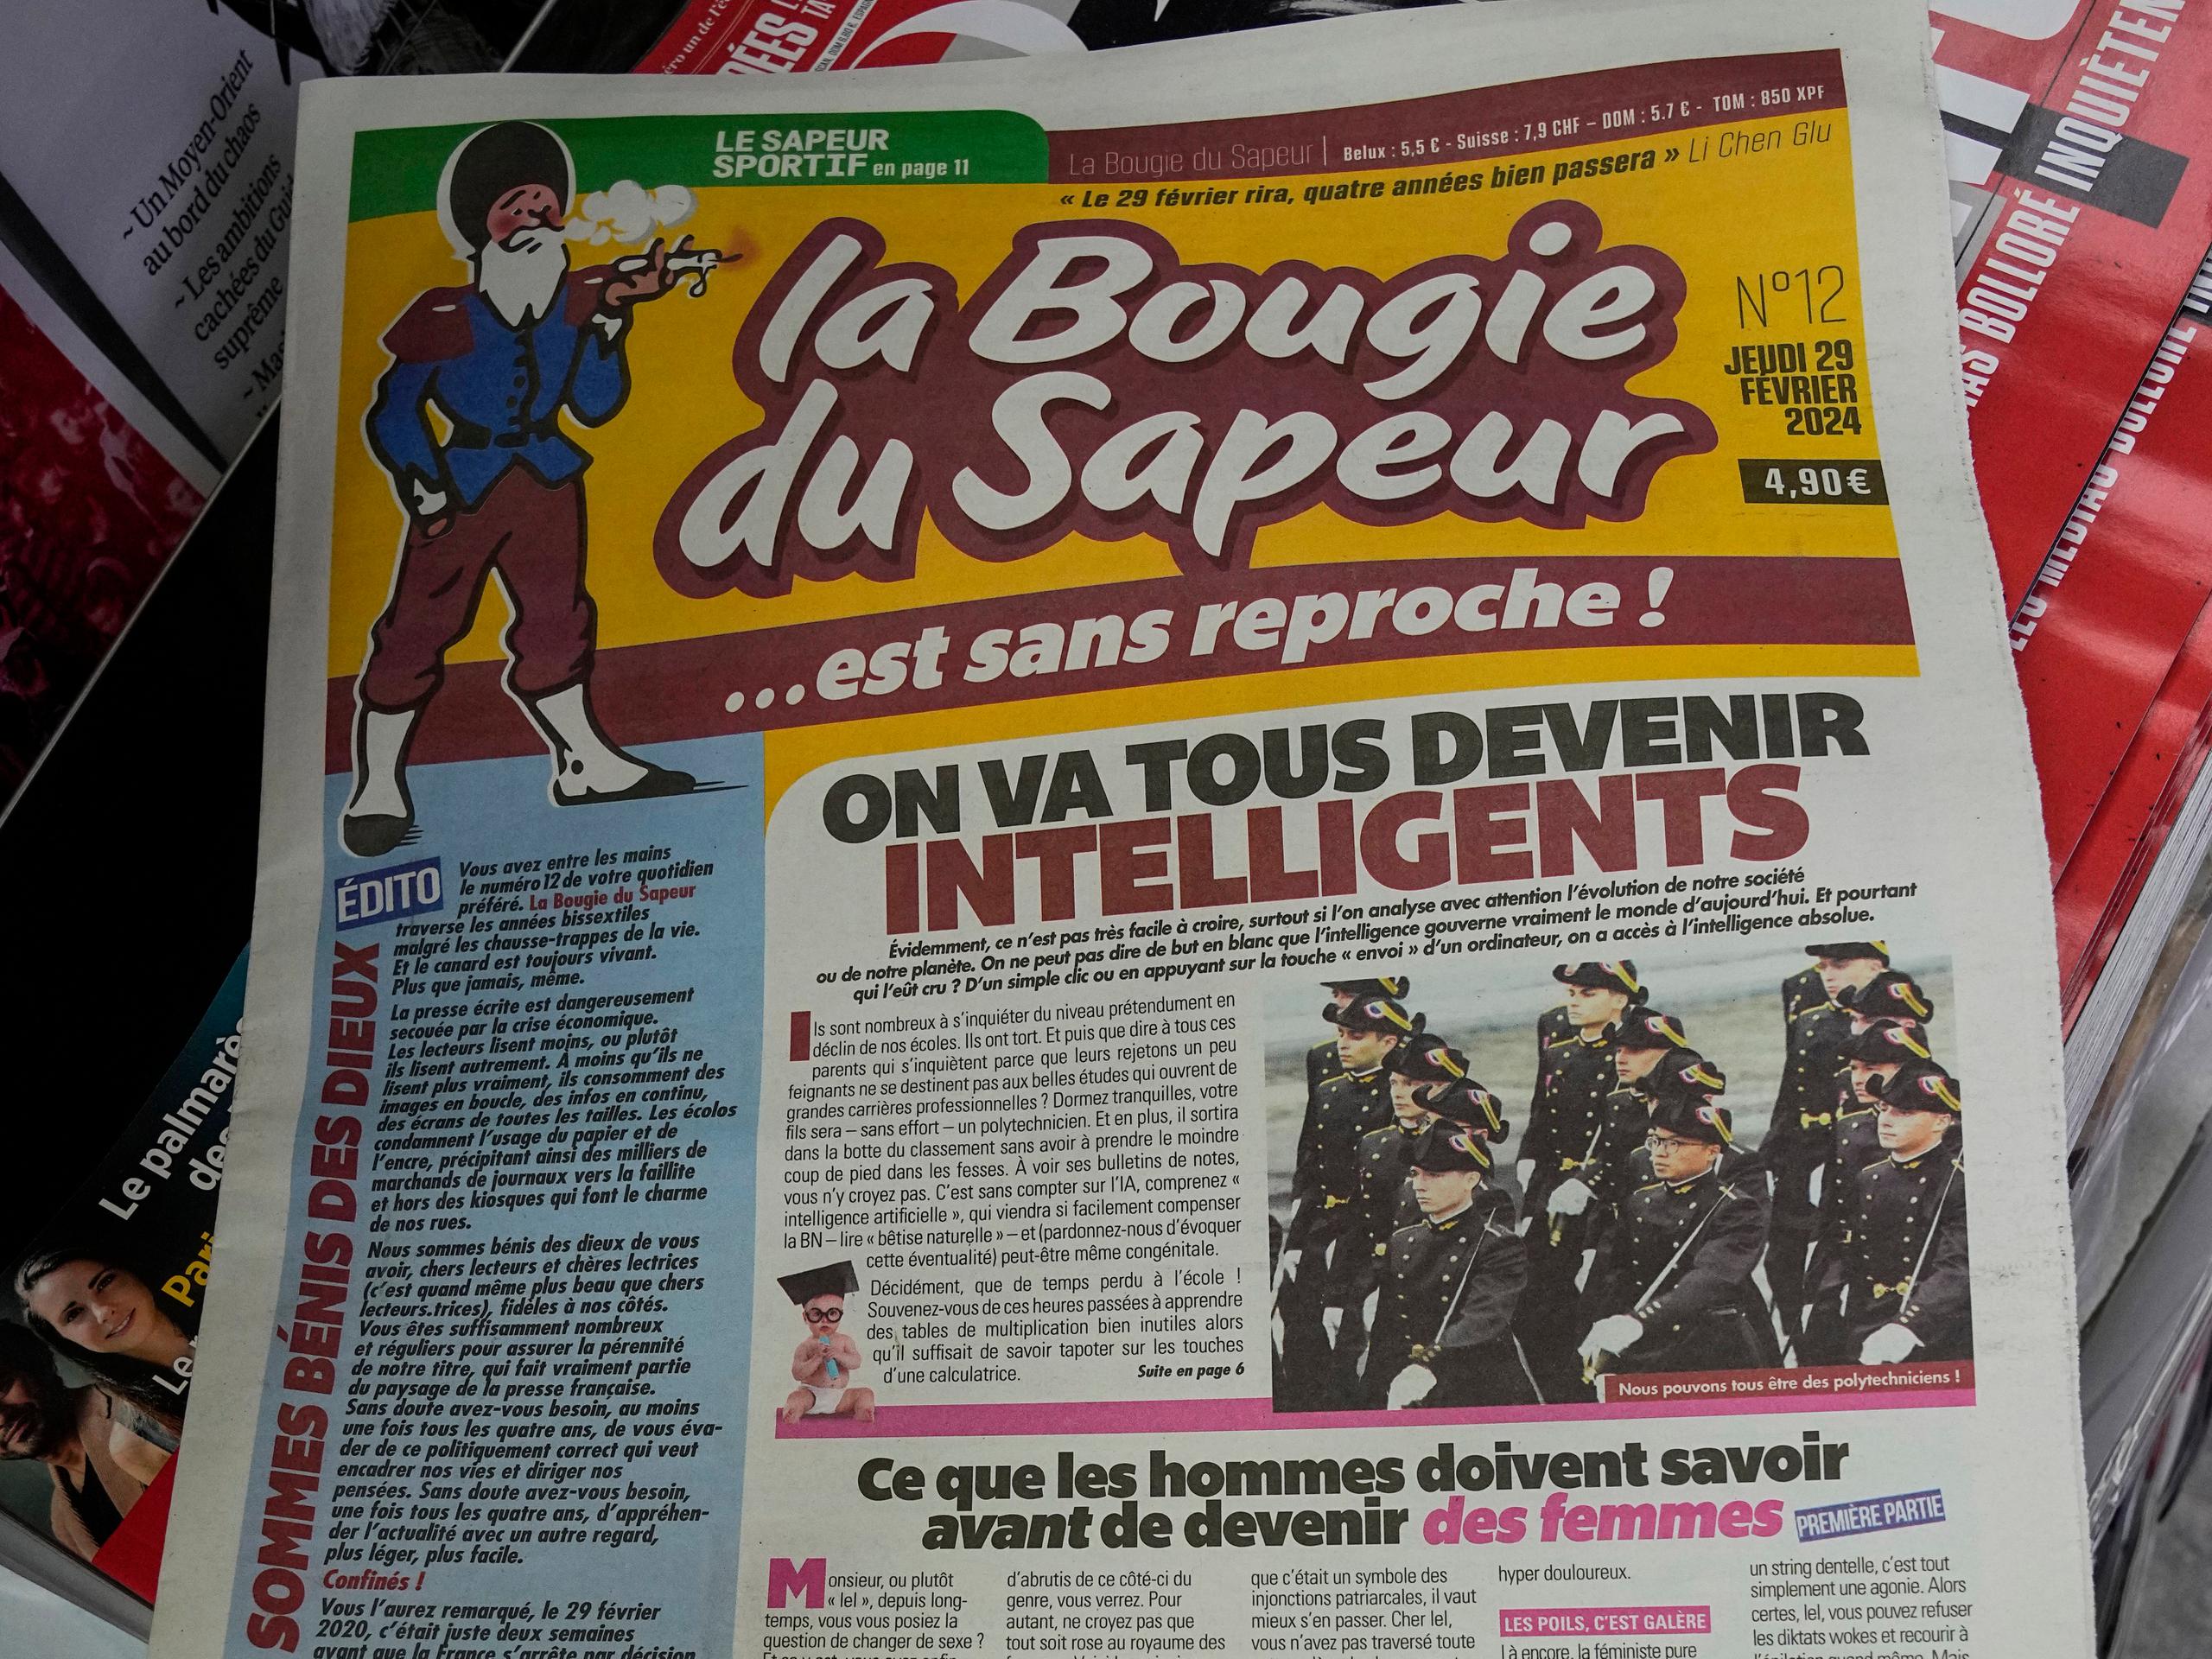 La Bougie du Sapeur sólo se publica cada 29 de febrero, es decir, en años bisiestos. Comenzó como una broma en 1980.